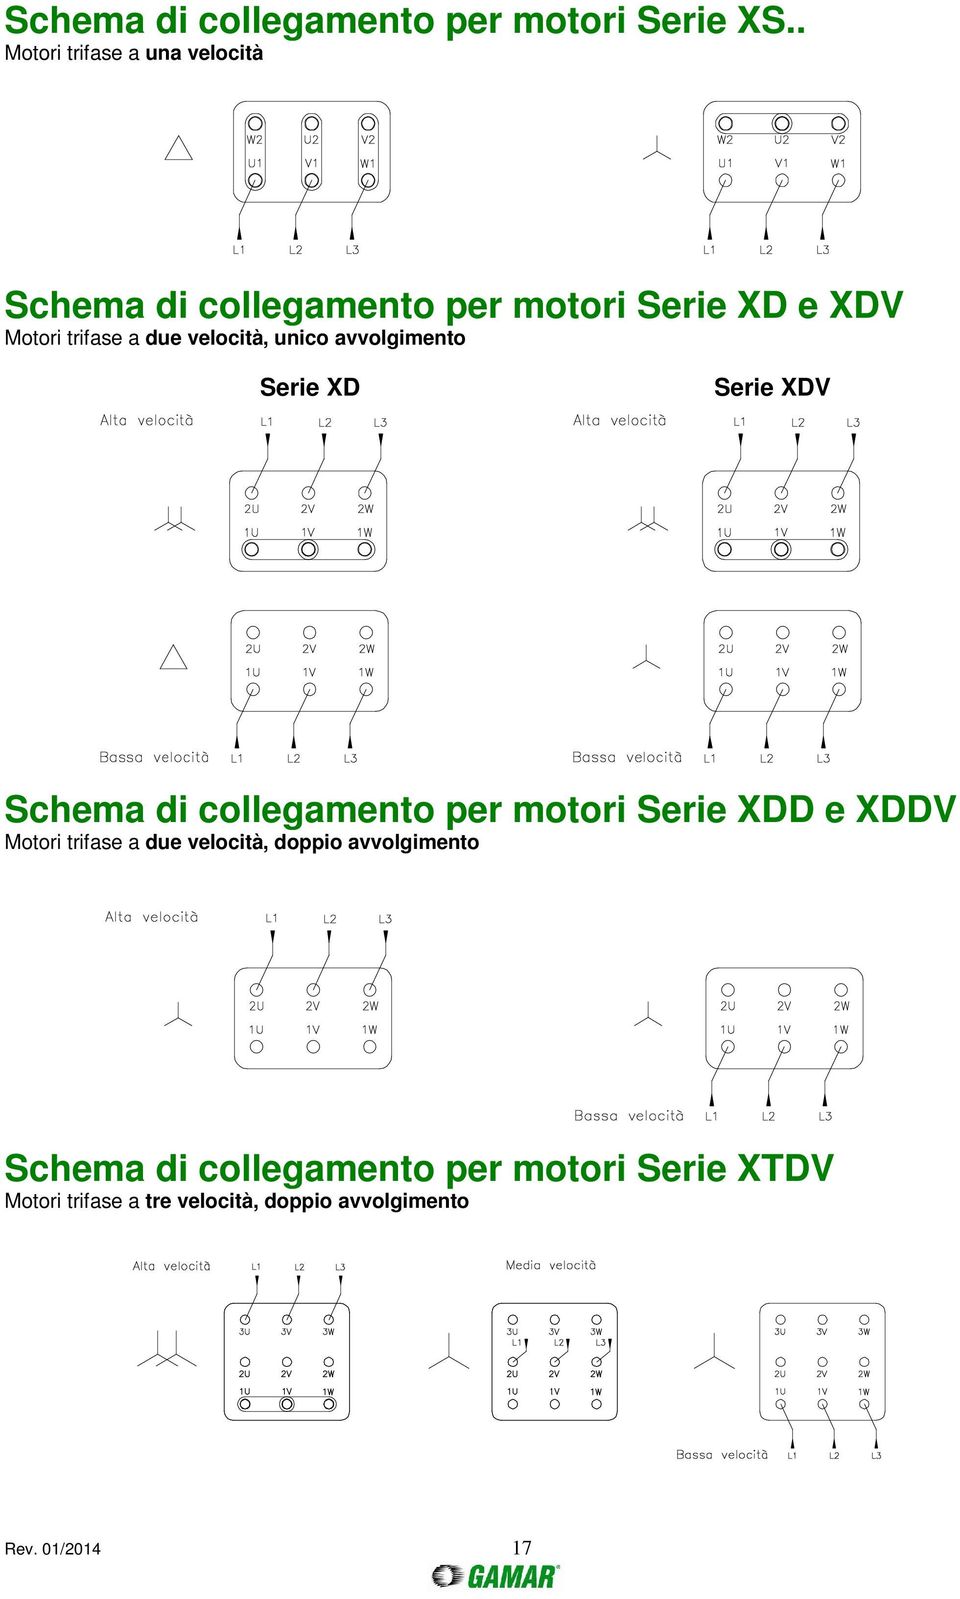 velocità, unico avvolgimento Serie XD Serie XDV Schema di collegamento per motori Serie XDD e XDDV